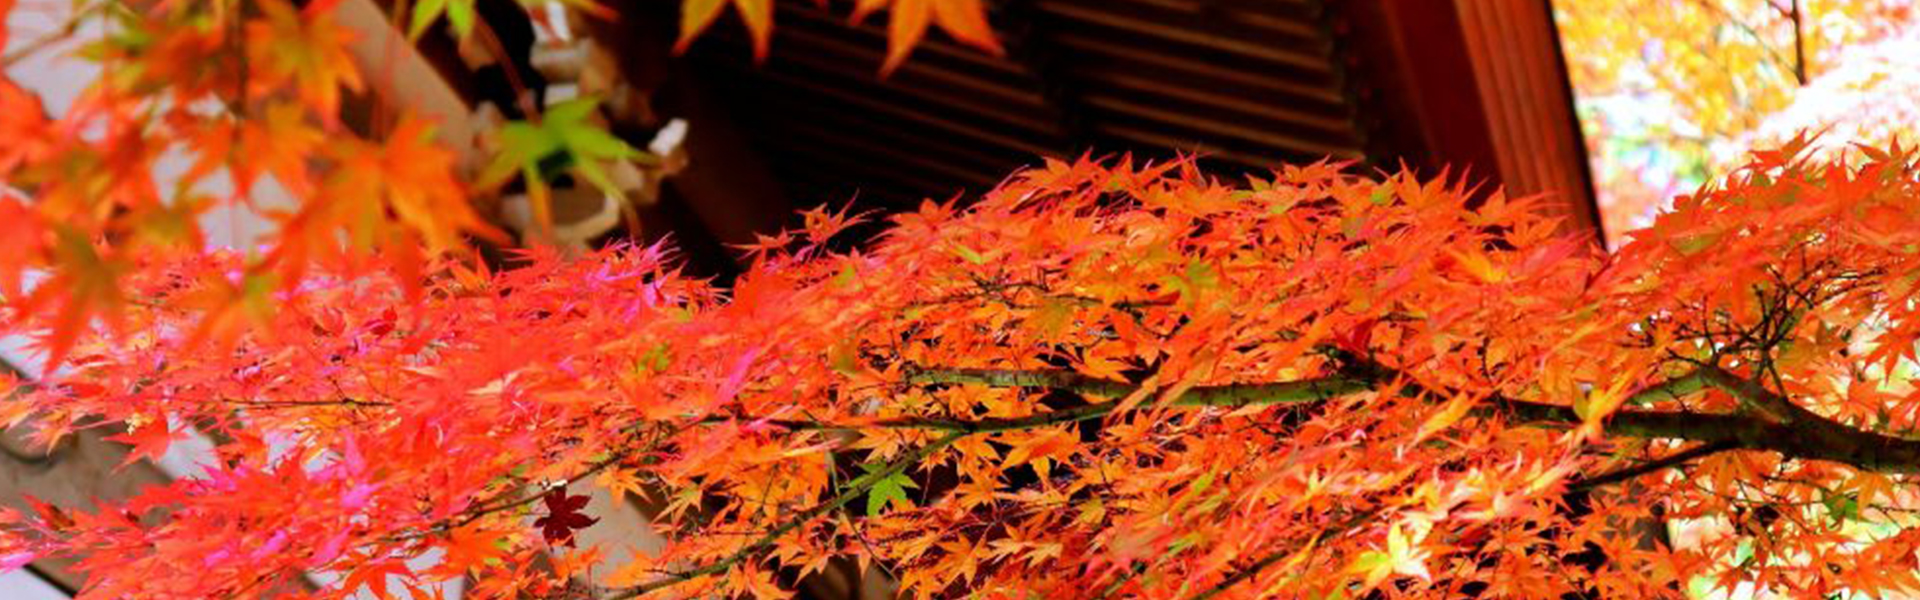 秋を告げる色彩豊かな紅葉